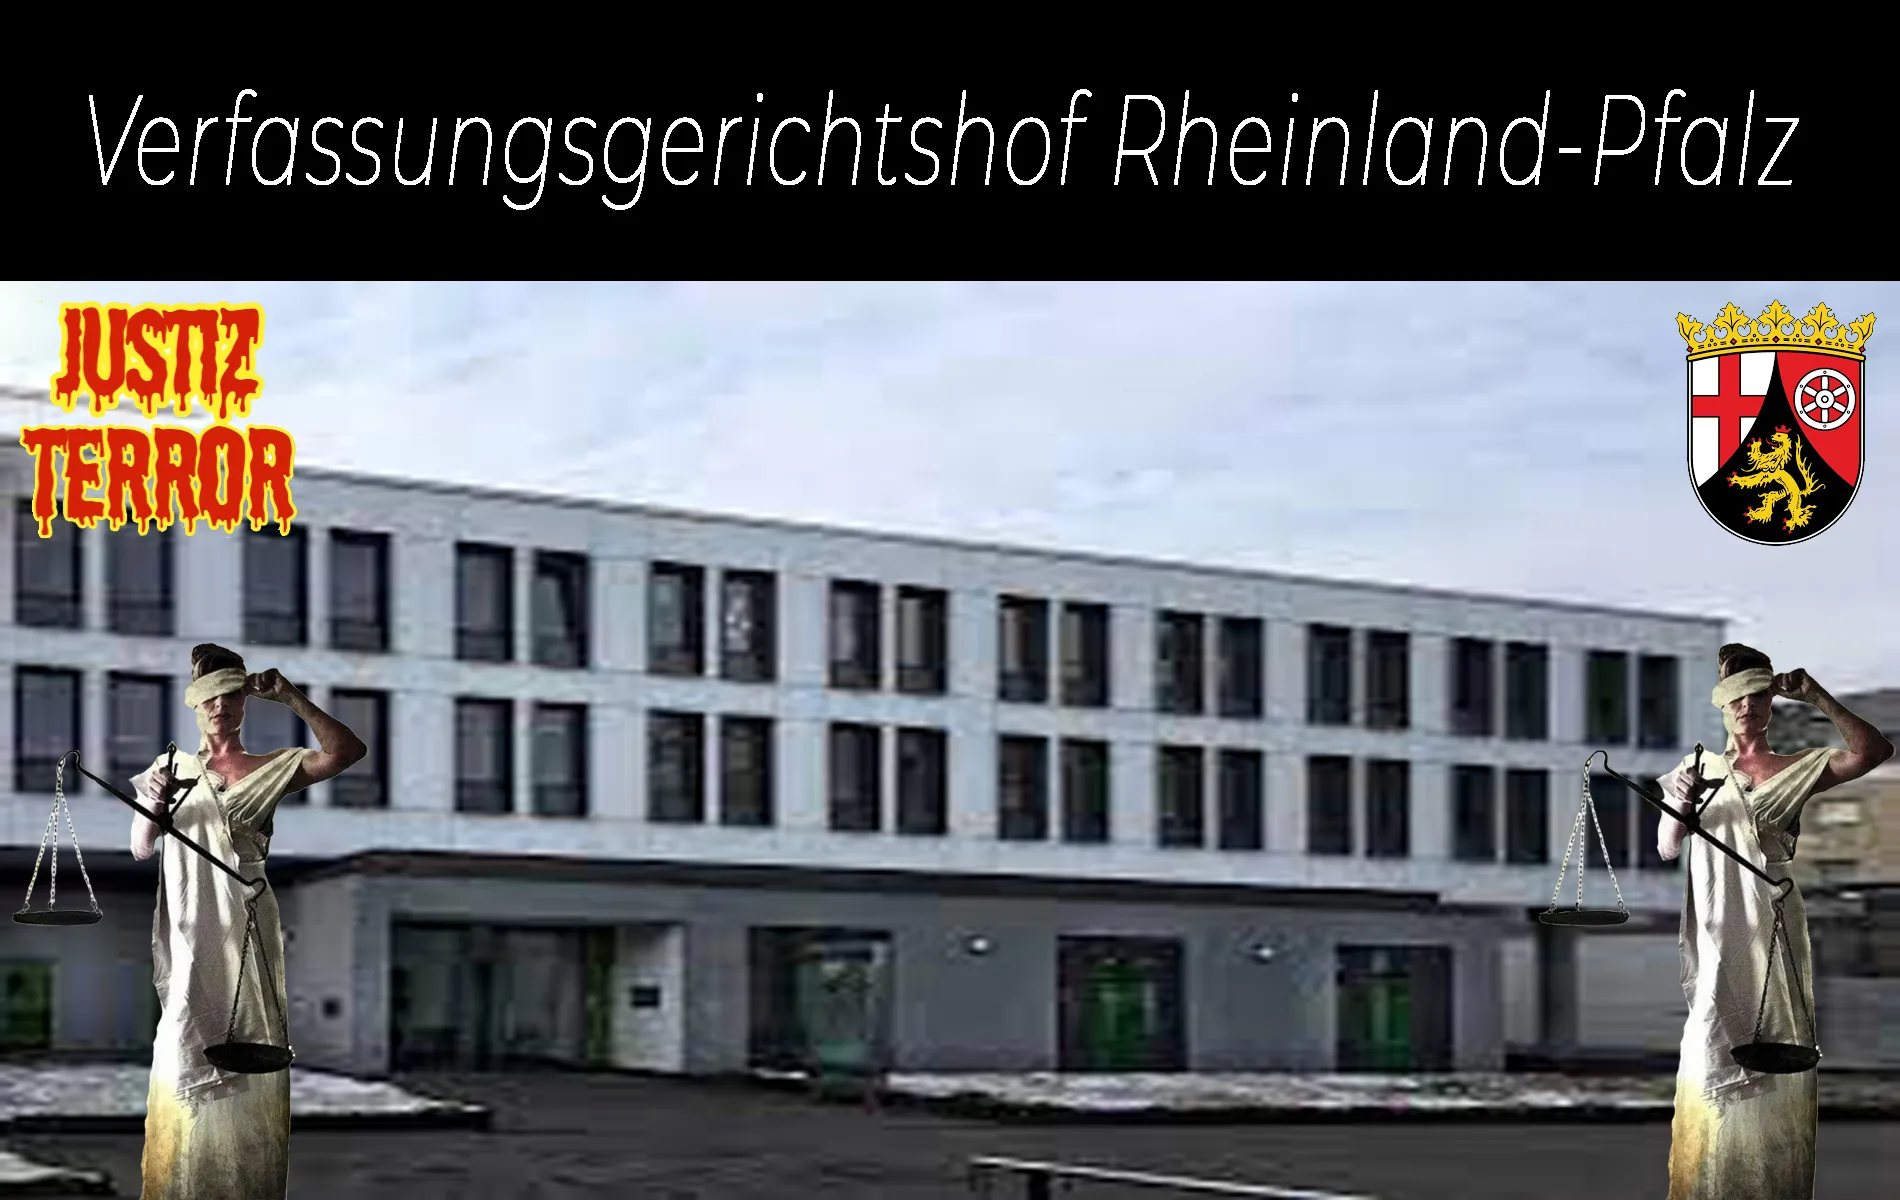 Verfassungsgerichtshof Rheinland-Pfalz ist Teil der Justiz die Terror begleitet und Justizterror als Waffe einsetzt